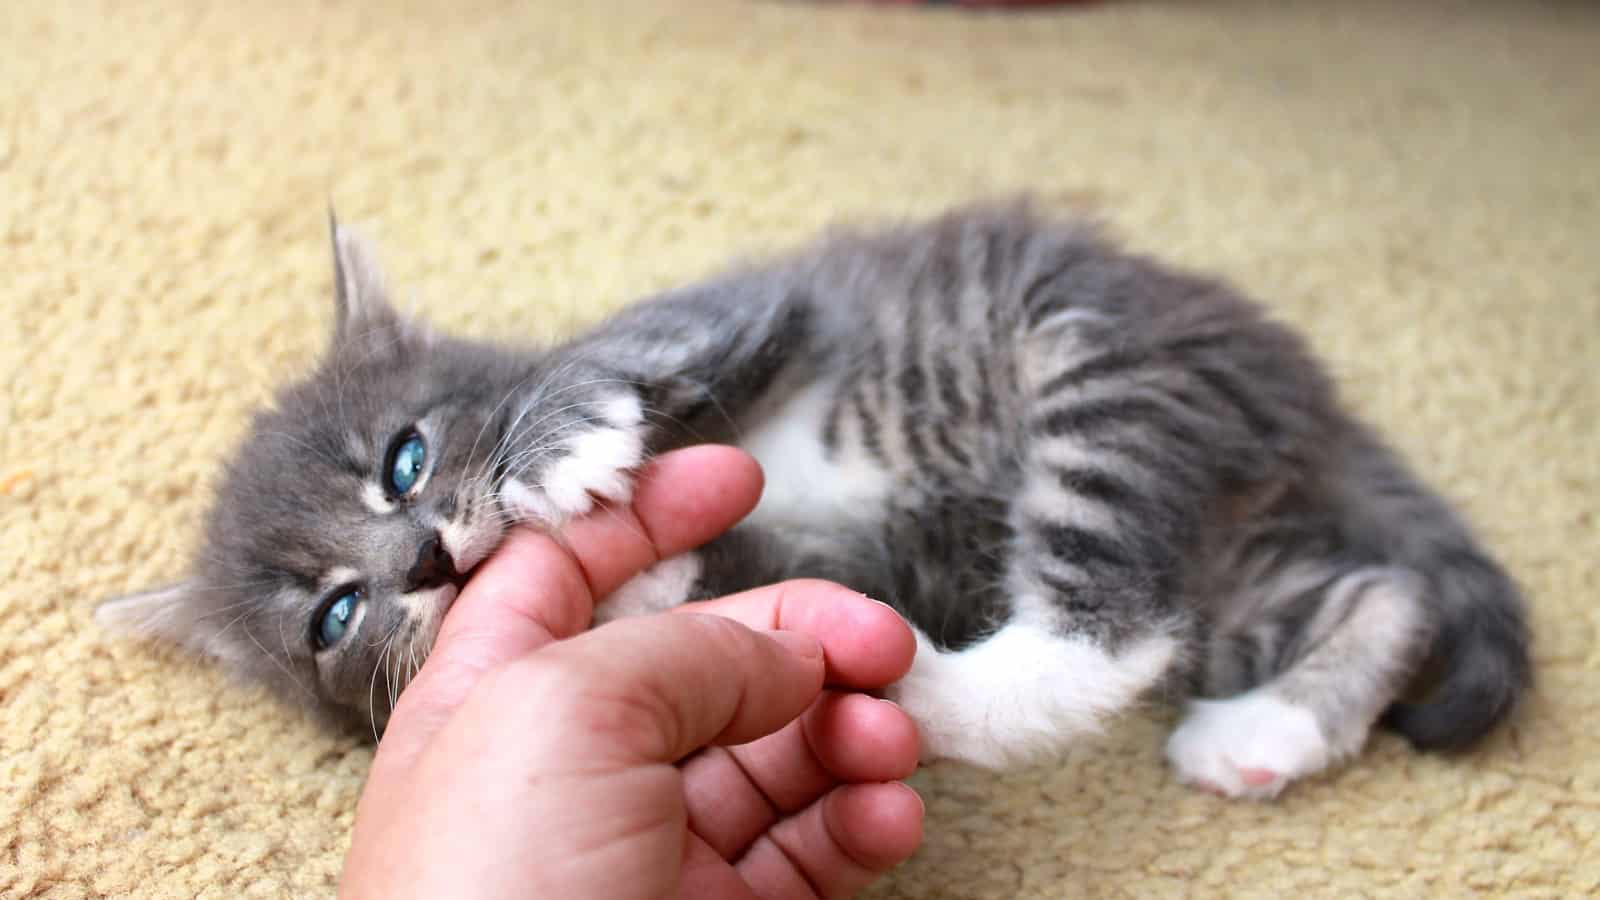 Kitten eating human finger
